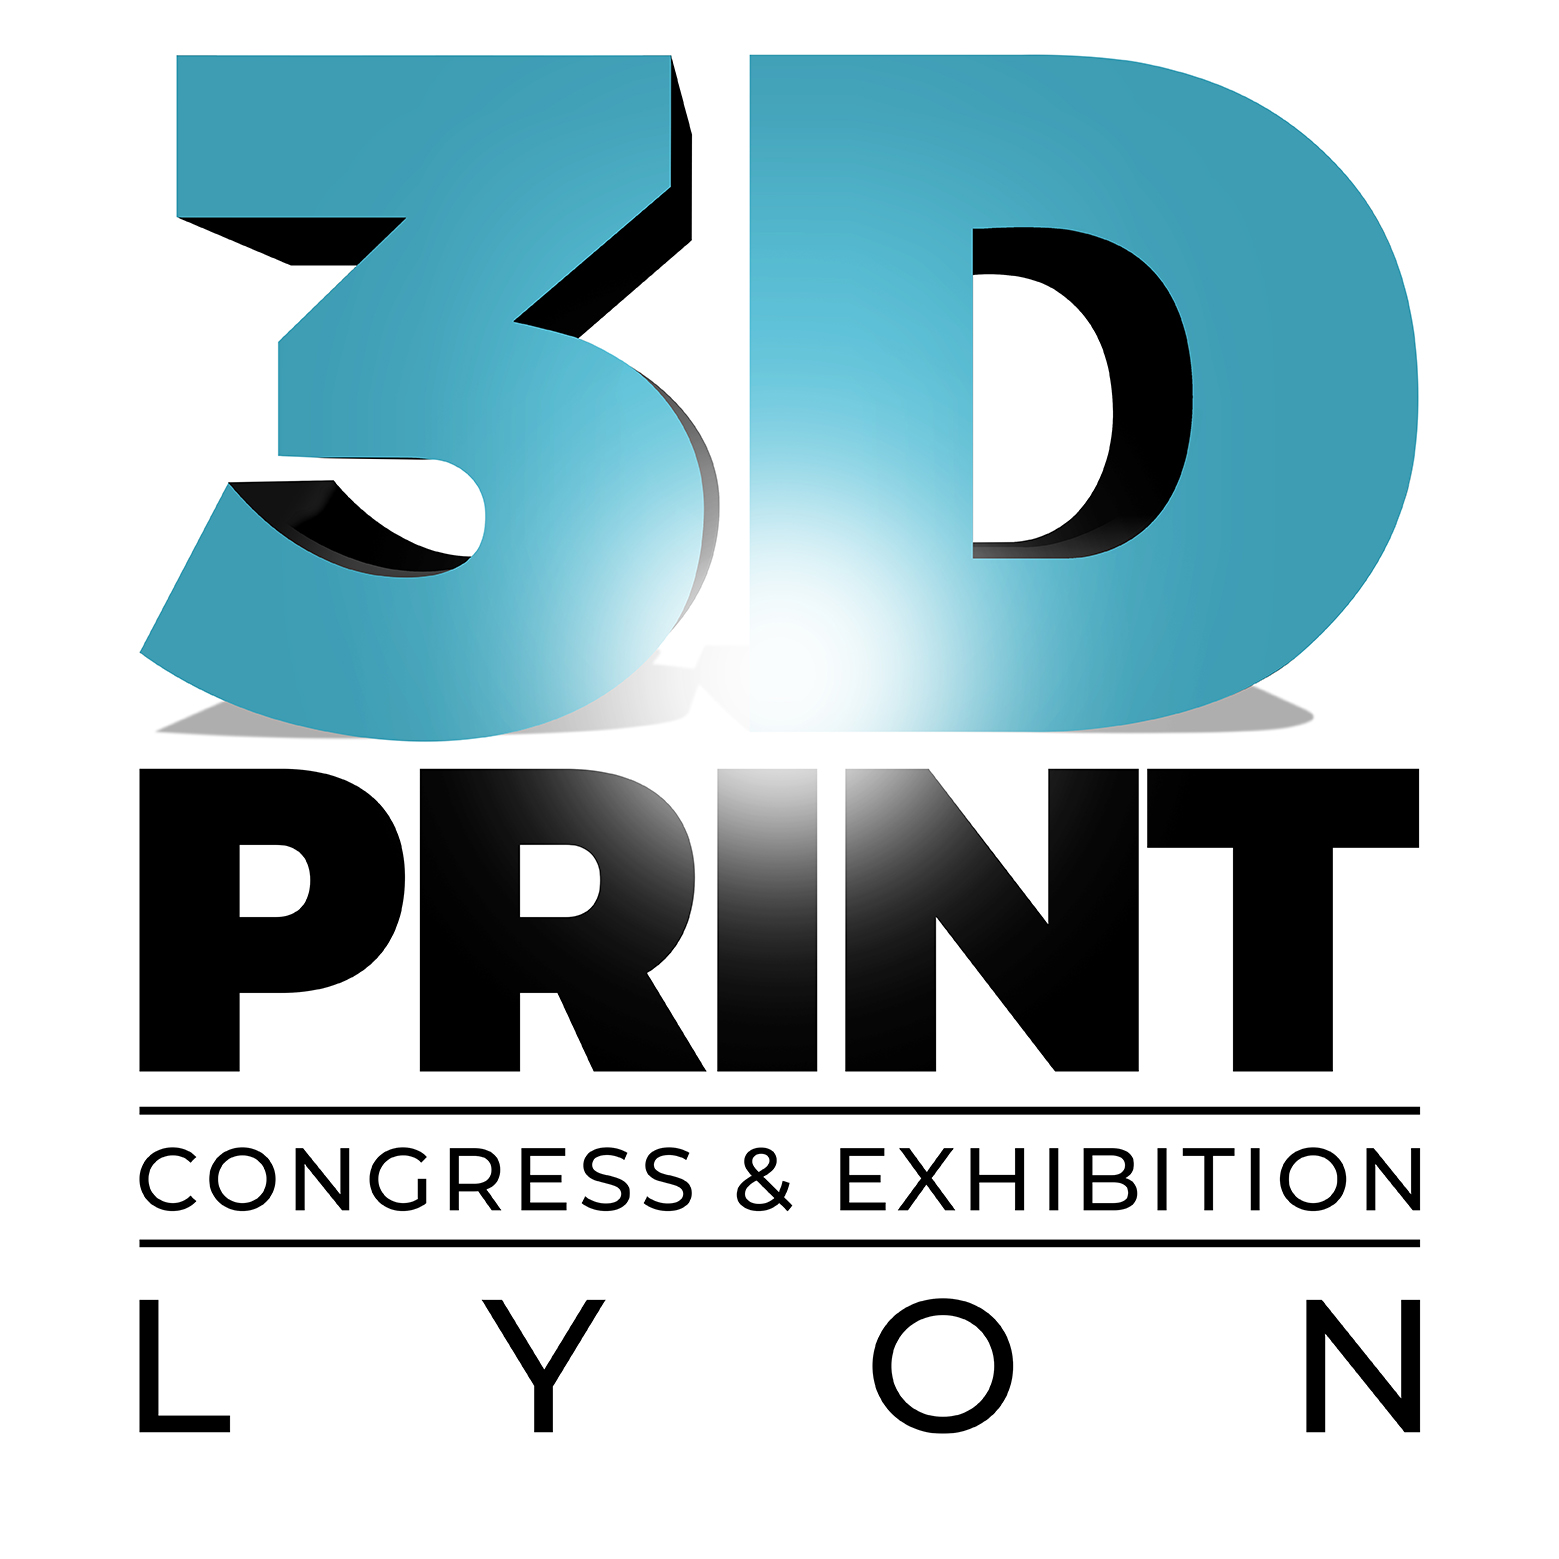  3D Print Congress & Exhibition Lyon